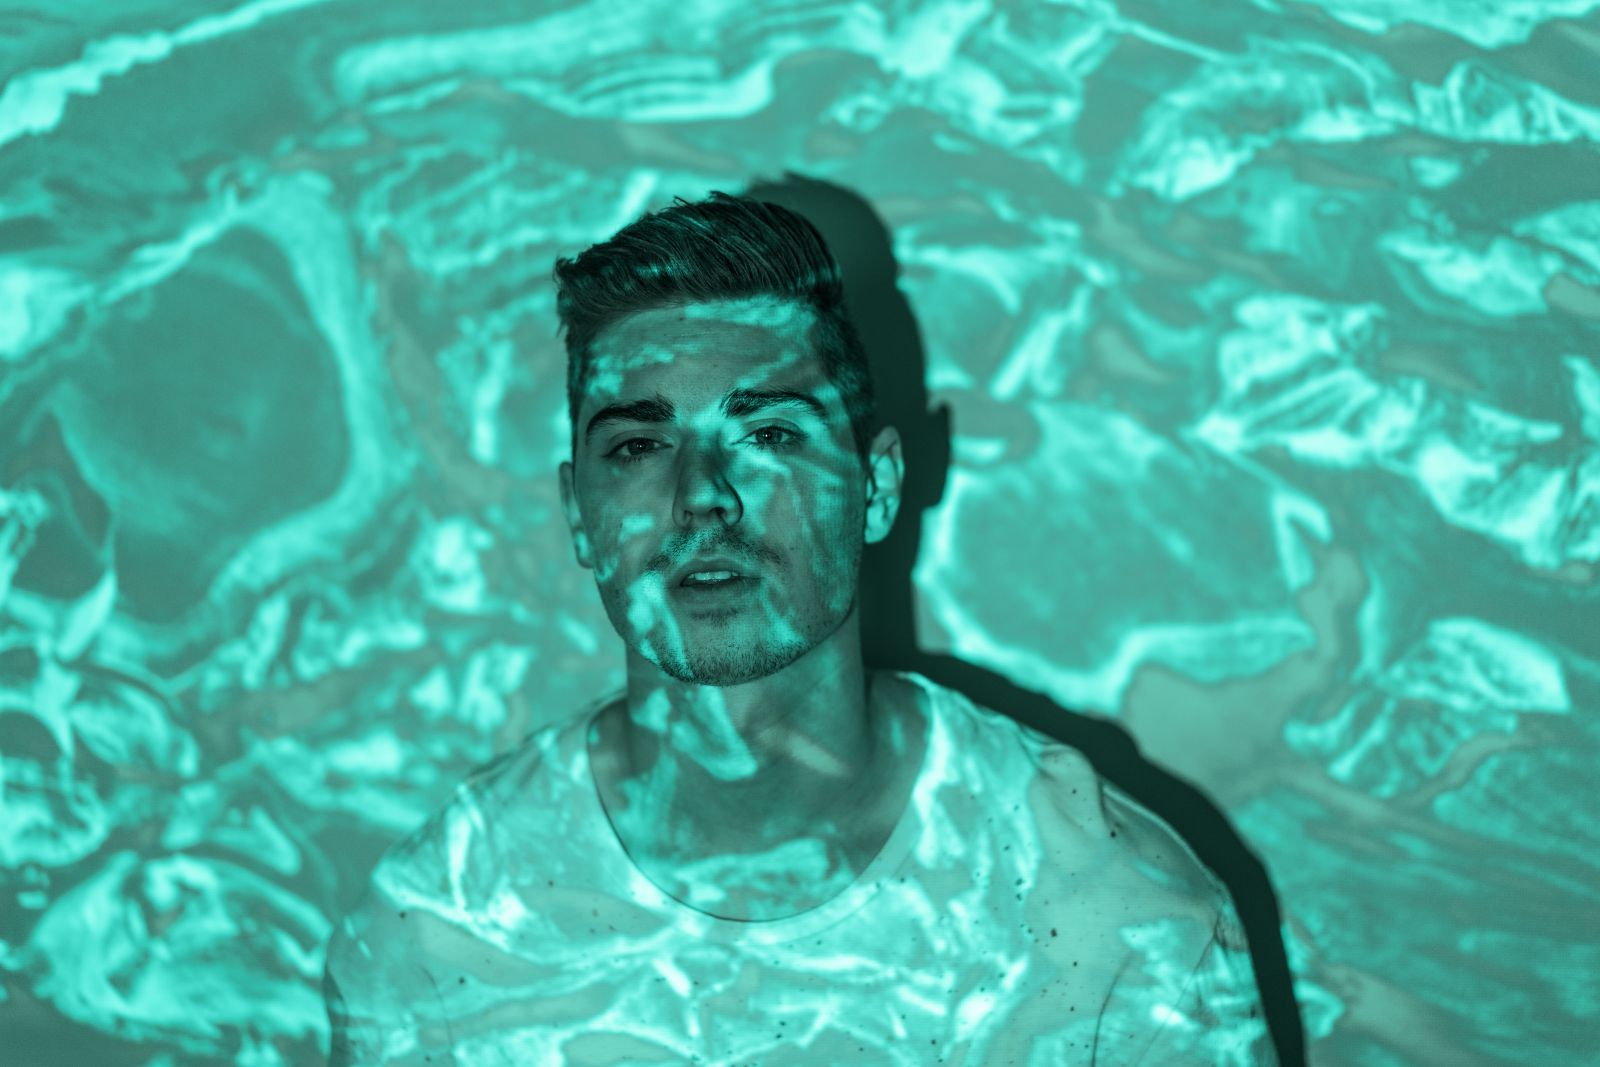 Retrato de um homem com reflexos d'água projetados sobre ele.